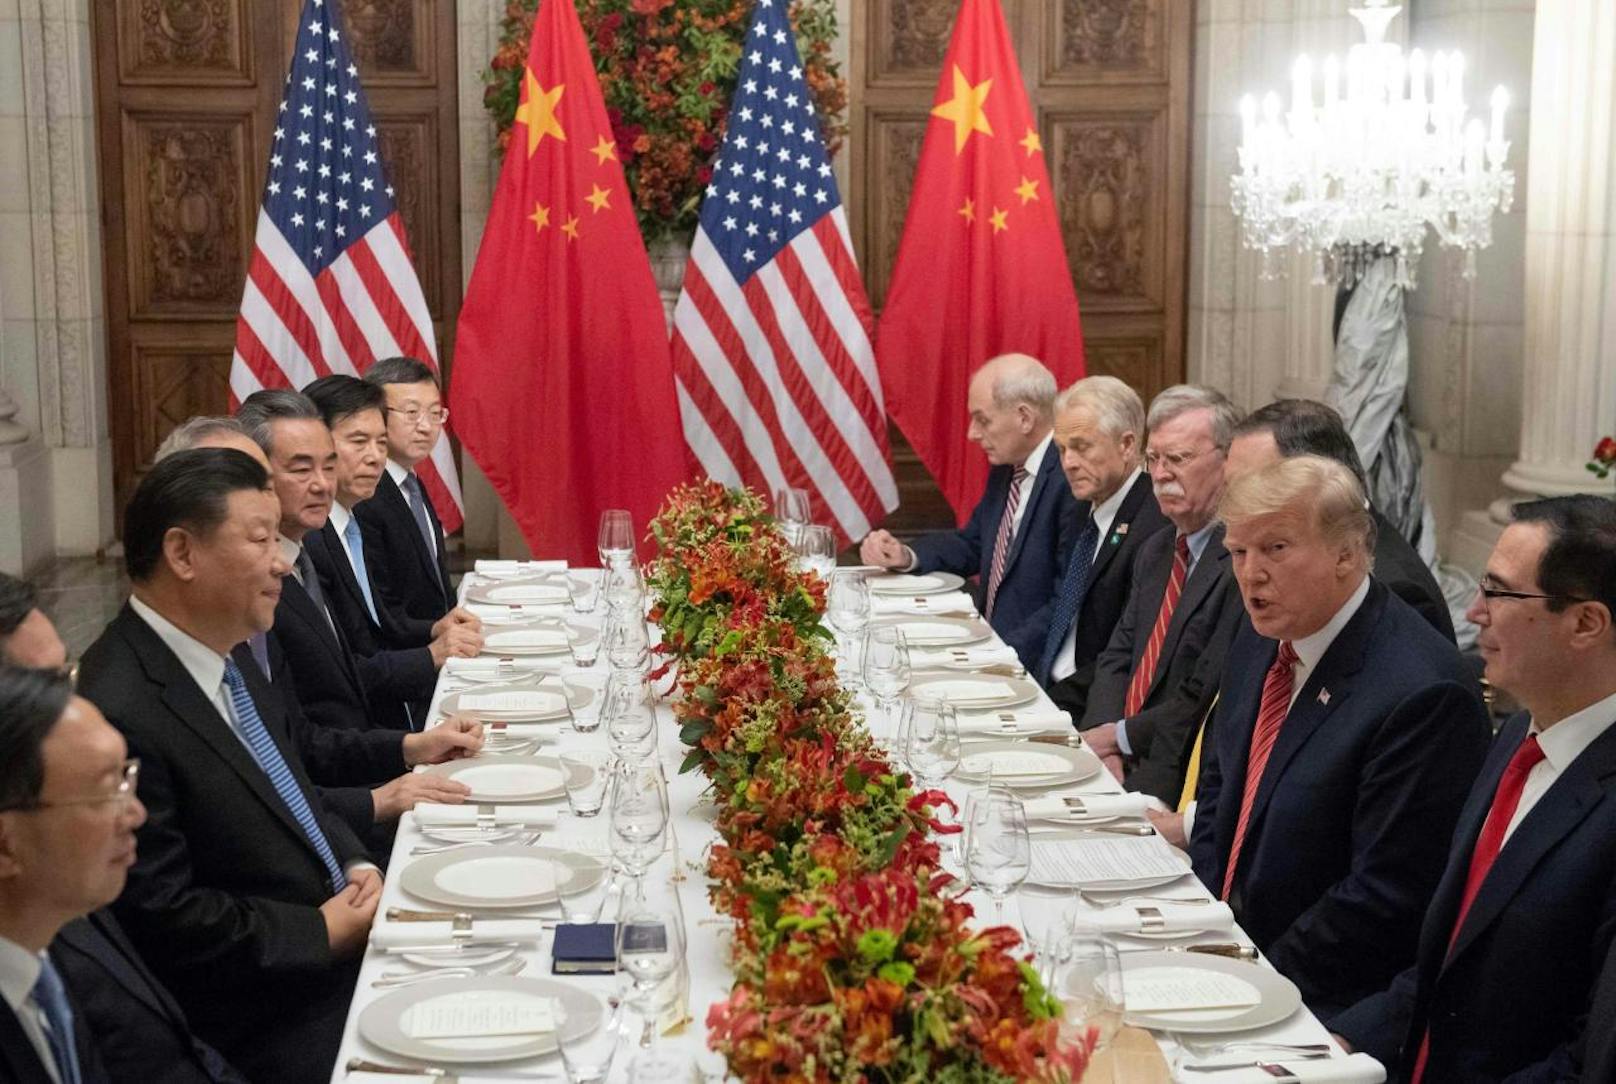 Xi Jinping und Donald Trump während des Arbeitsessens nach dem G-20-Gipfel in Buenos Aires am 1. Dezember 2018: <a href="https://www.heute.at/welt/news/story/G20-Gipfel-Argentinien-Trump-und-Xi-finden-im-Handelsstreit-vorlaeufige-Loesung-46726686" target="_blank">Beide wollen "etwas Gutes für China und die Vereinigten Staaten"</a>